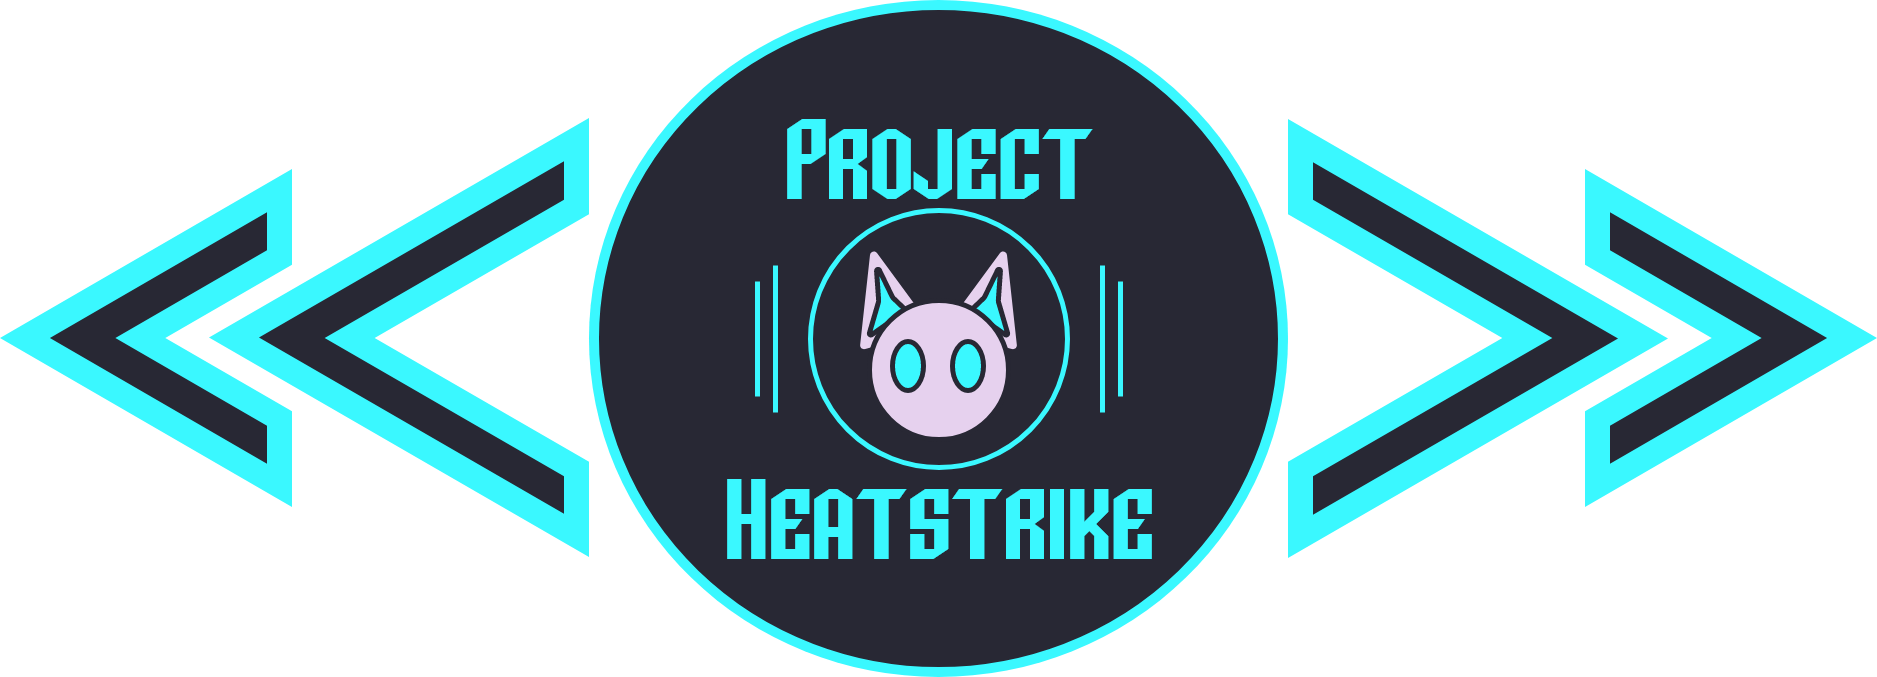 Project: Heatstrike